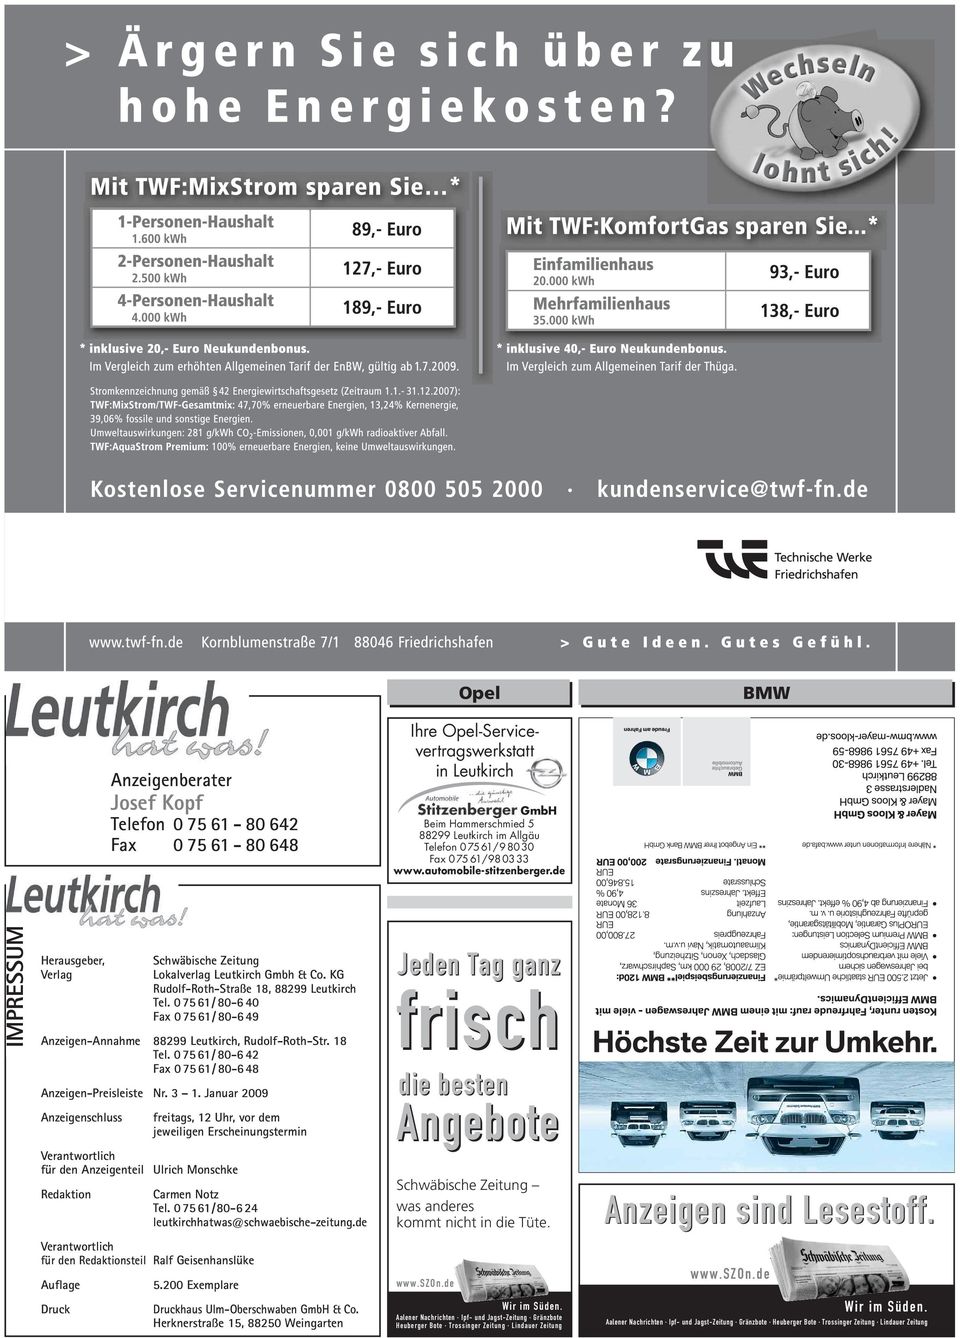 075 61/ 80-6 40 Fax 075 61/ 80-6 49 Anzeigen-Annahme 88299 Leutkirch, Rudolf-Roth-Str. 18 Tel. 075 61/ 80-6 42 Fax 075 61/ 80-6 48 Anzeigen-Preisleiste Nr. 3 1.